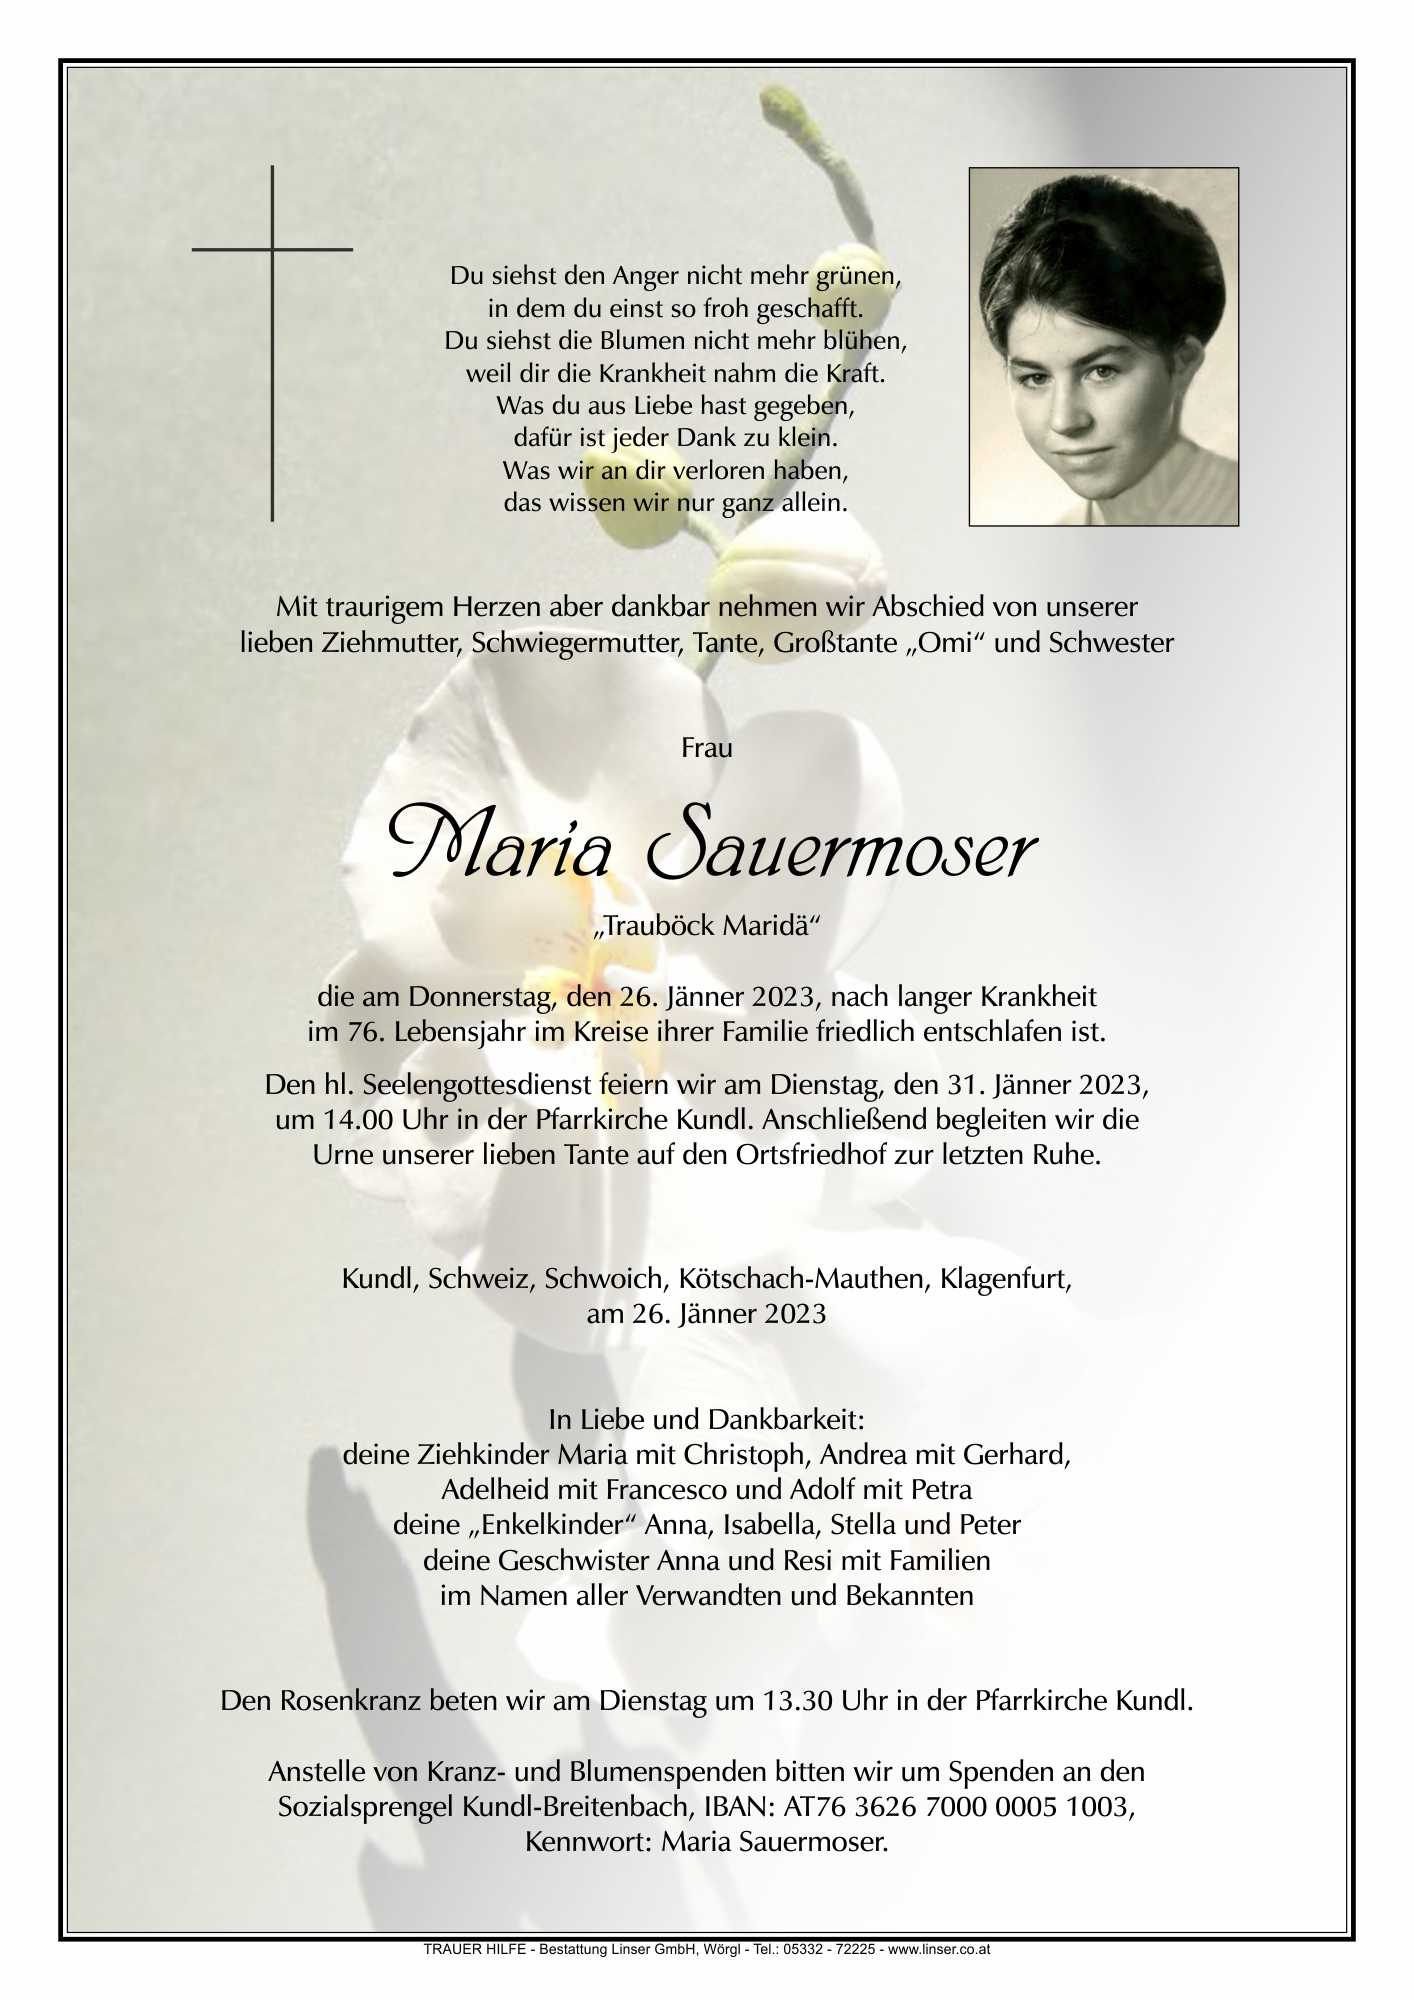 Maria Sauermoser